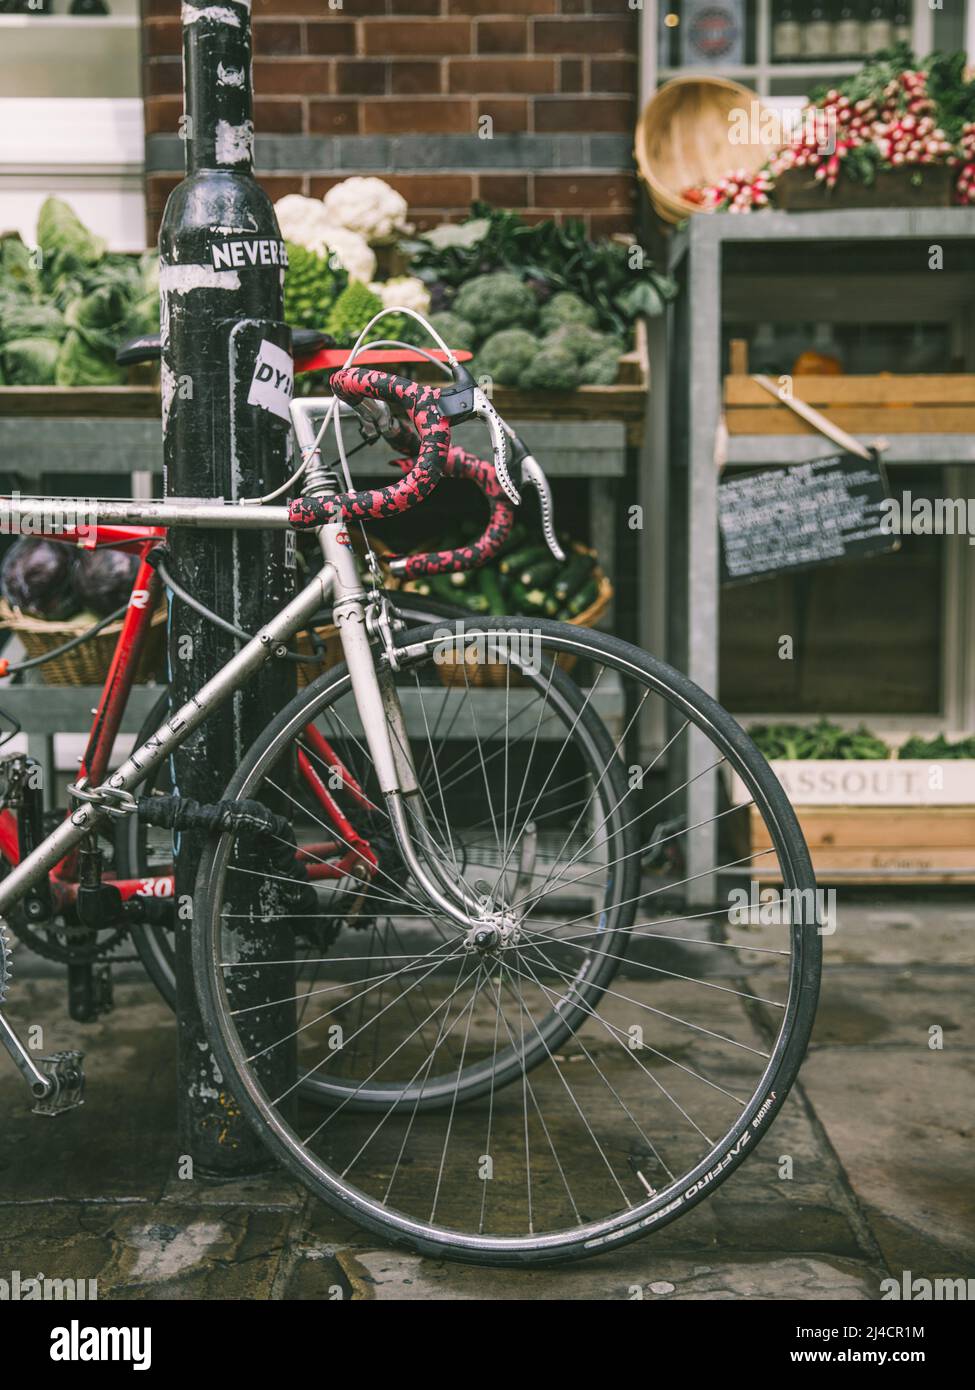 Greater London, London, UK - 14 aprile 2016: Una bicicletta da strada stazionaria è visto in primo piano di questa scena stradale di East London, con un frutto e. Foto Stock